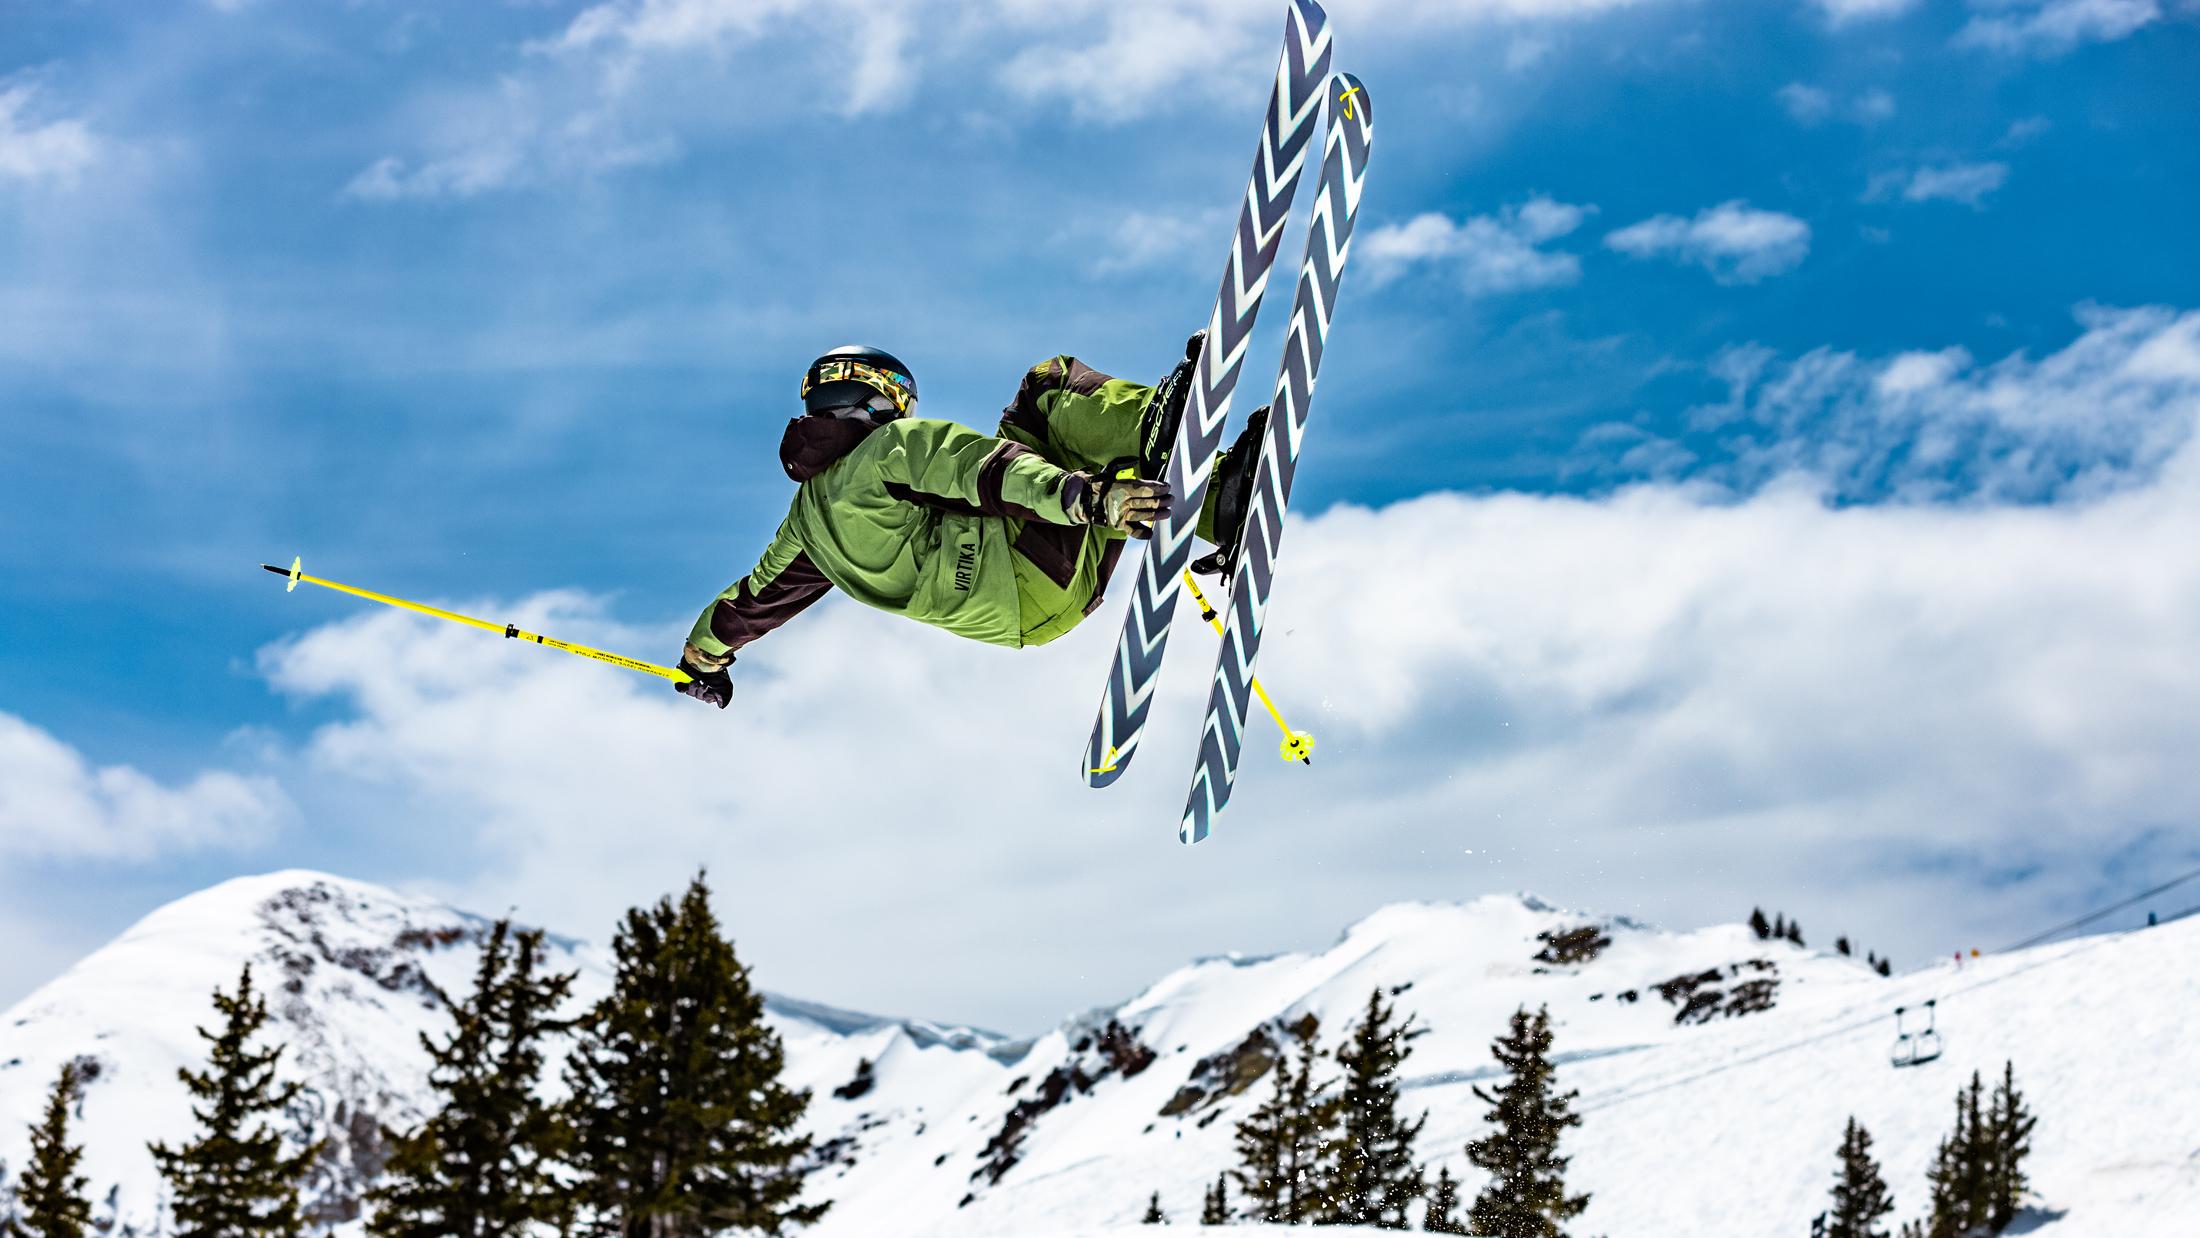 The Friend "FLOATER" Erik Abel x J Collab Limited Edition Ski Shredding Image